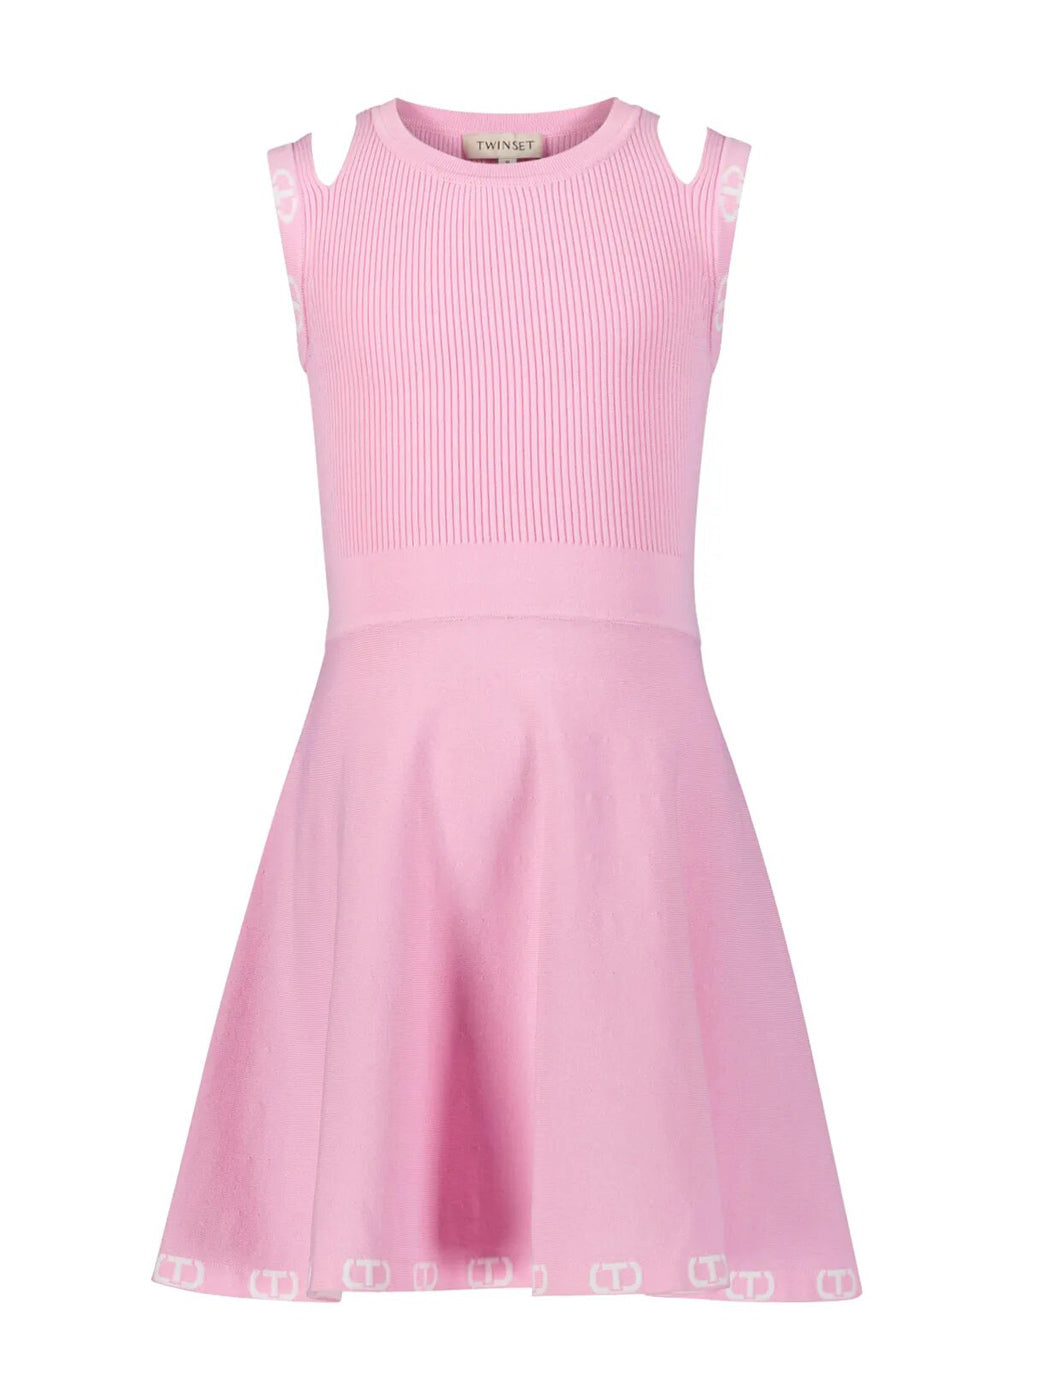 Κοριτσίστικο κοντό φόρεμα με λογότυπο ζακάρ